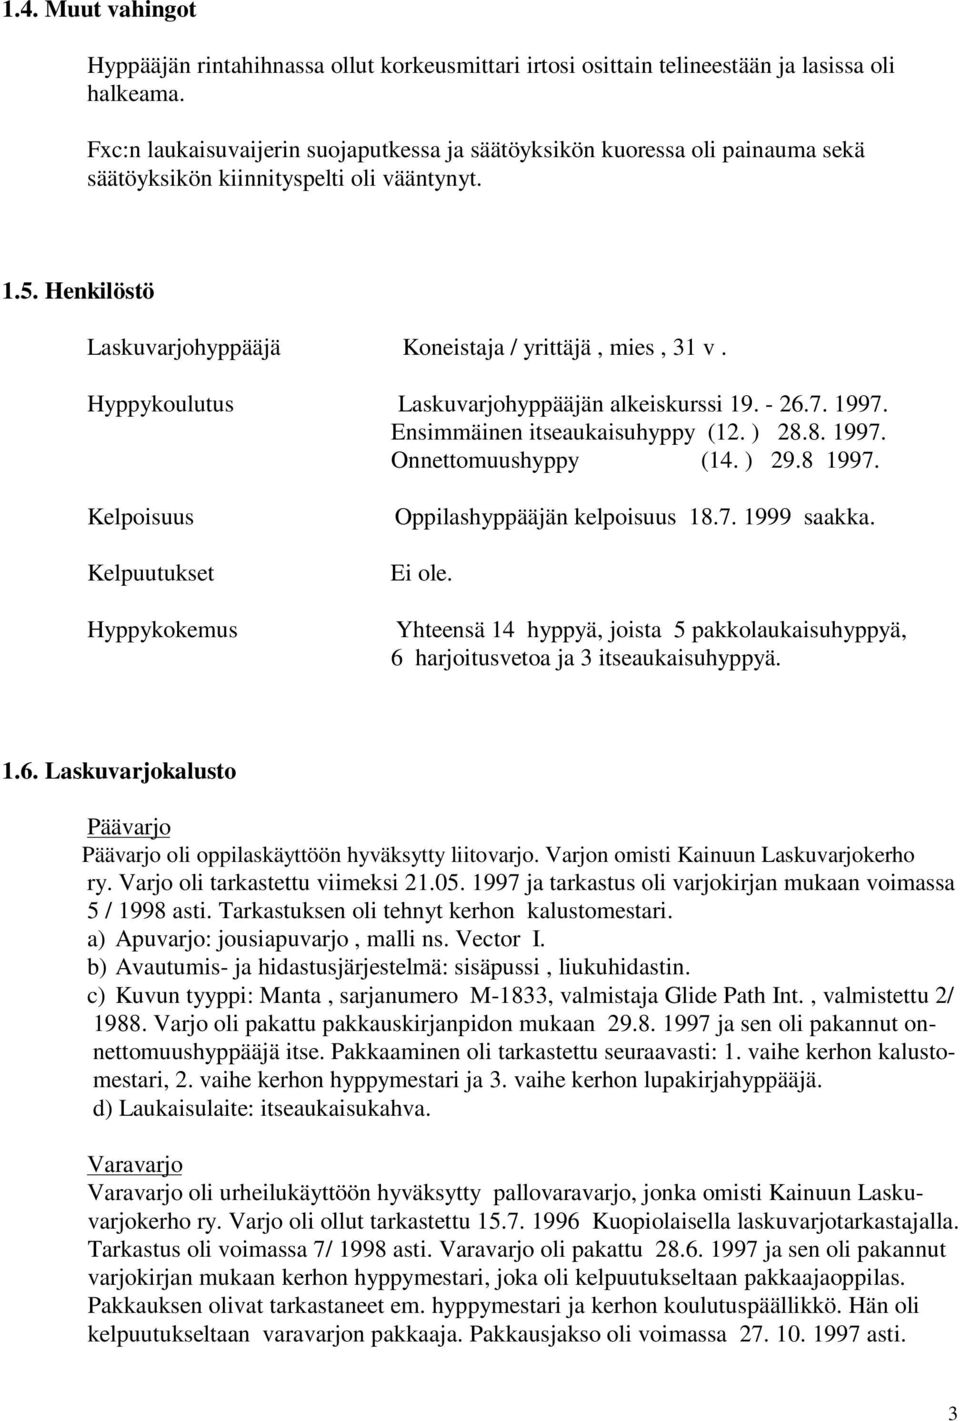 Hyppykoulutus Laskuvarjohyppääjän alkeiskurssi 19. - 26.7. 1997. Ensimmäinen itseaukaisuhyppy (12. ) 28.8. 1997. Onnettomuushyppy (14. ) 29.8 1997.